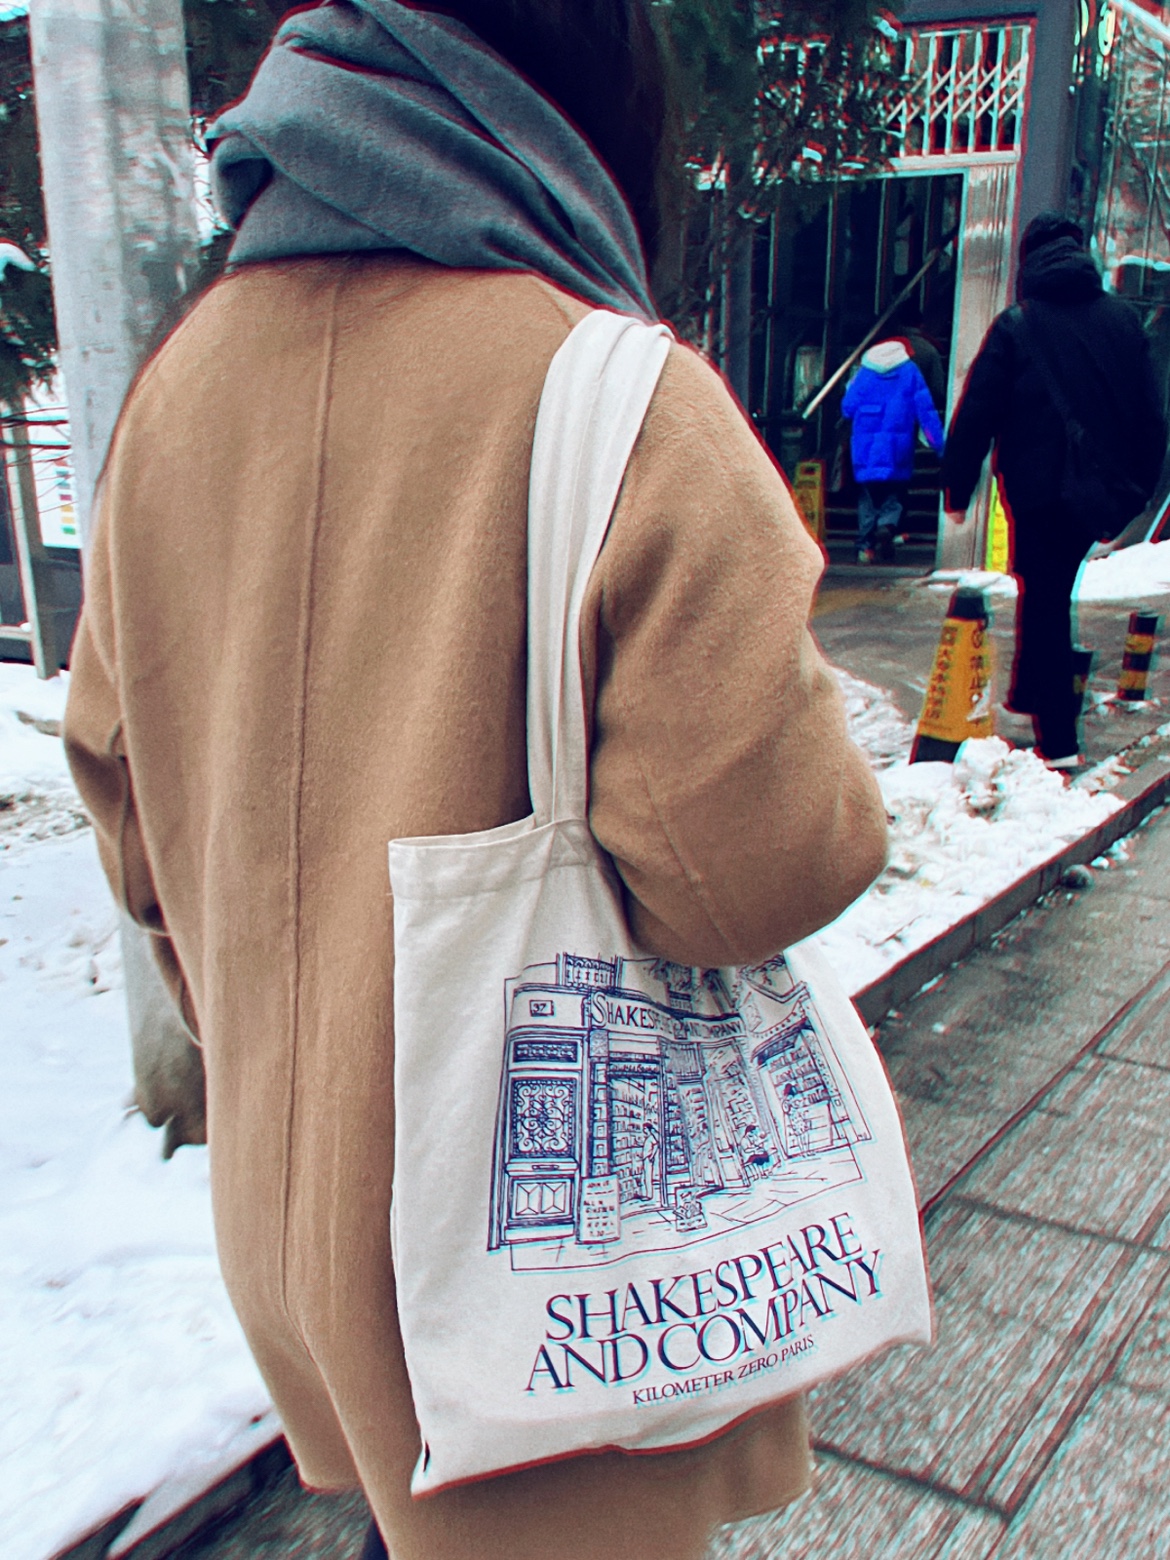 法国巴黎莎士比亚书店周边布袋轻便环保袋棉布手提包单肩包